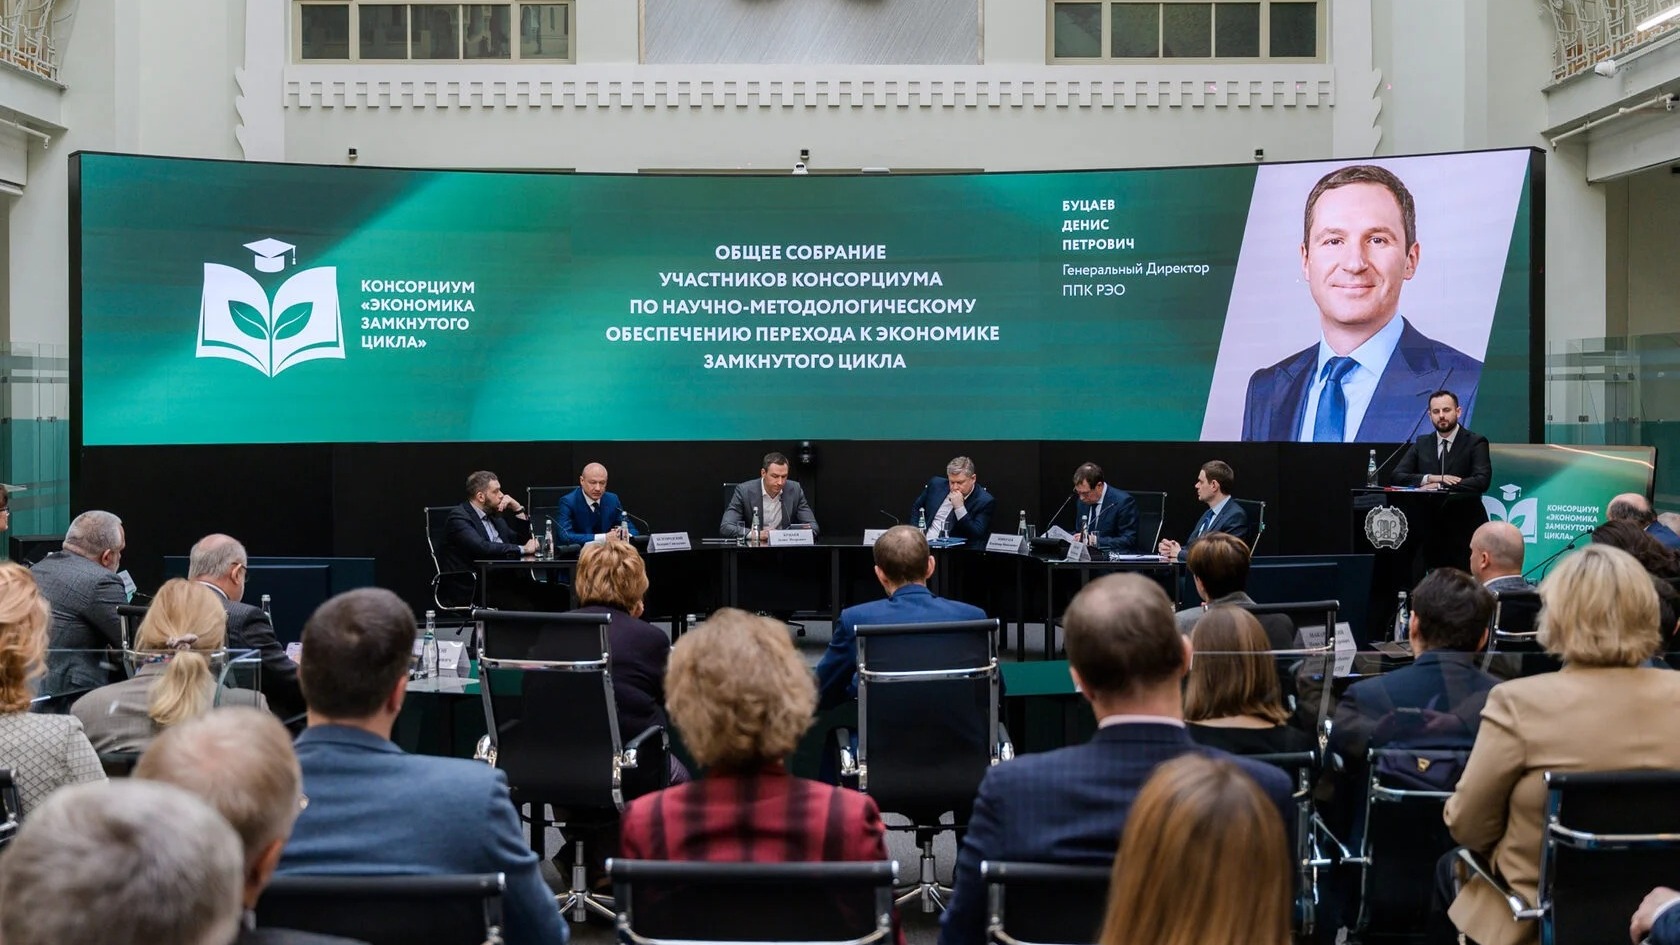 РЭО: В вузах России откроются центры компетенций по экономике замкнутого цикла